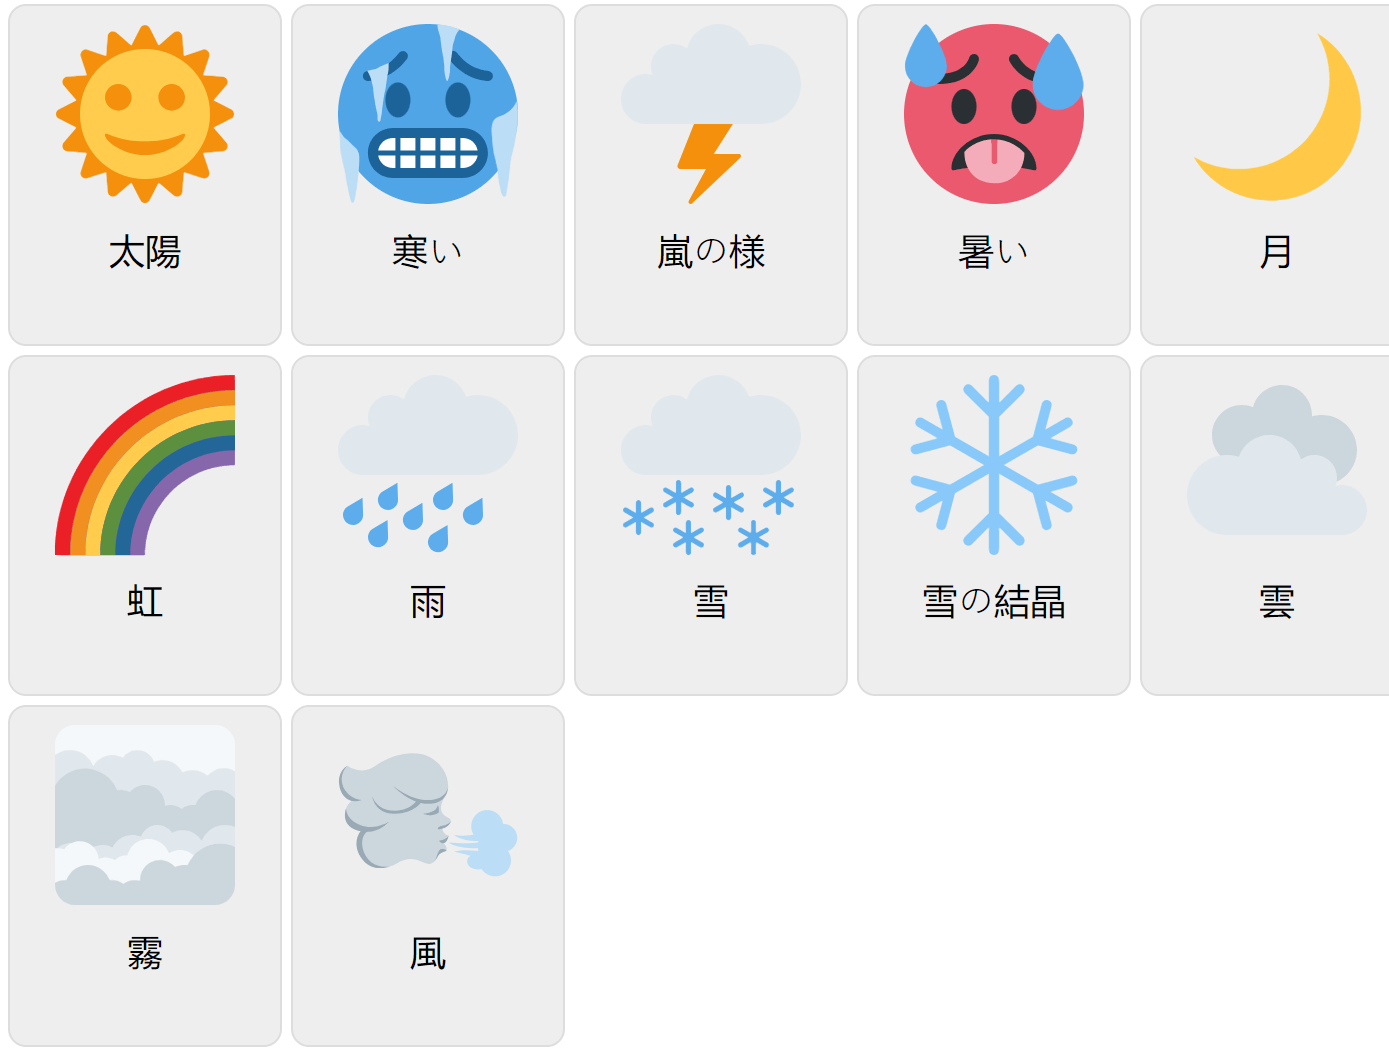 Väder på japanska